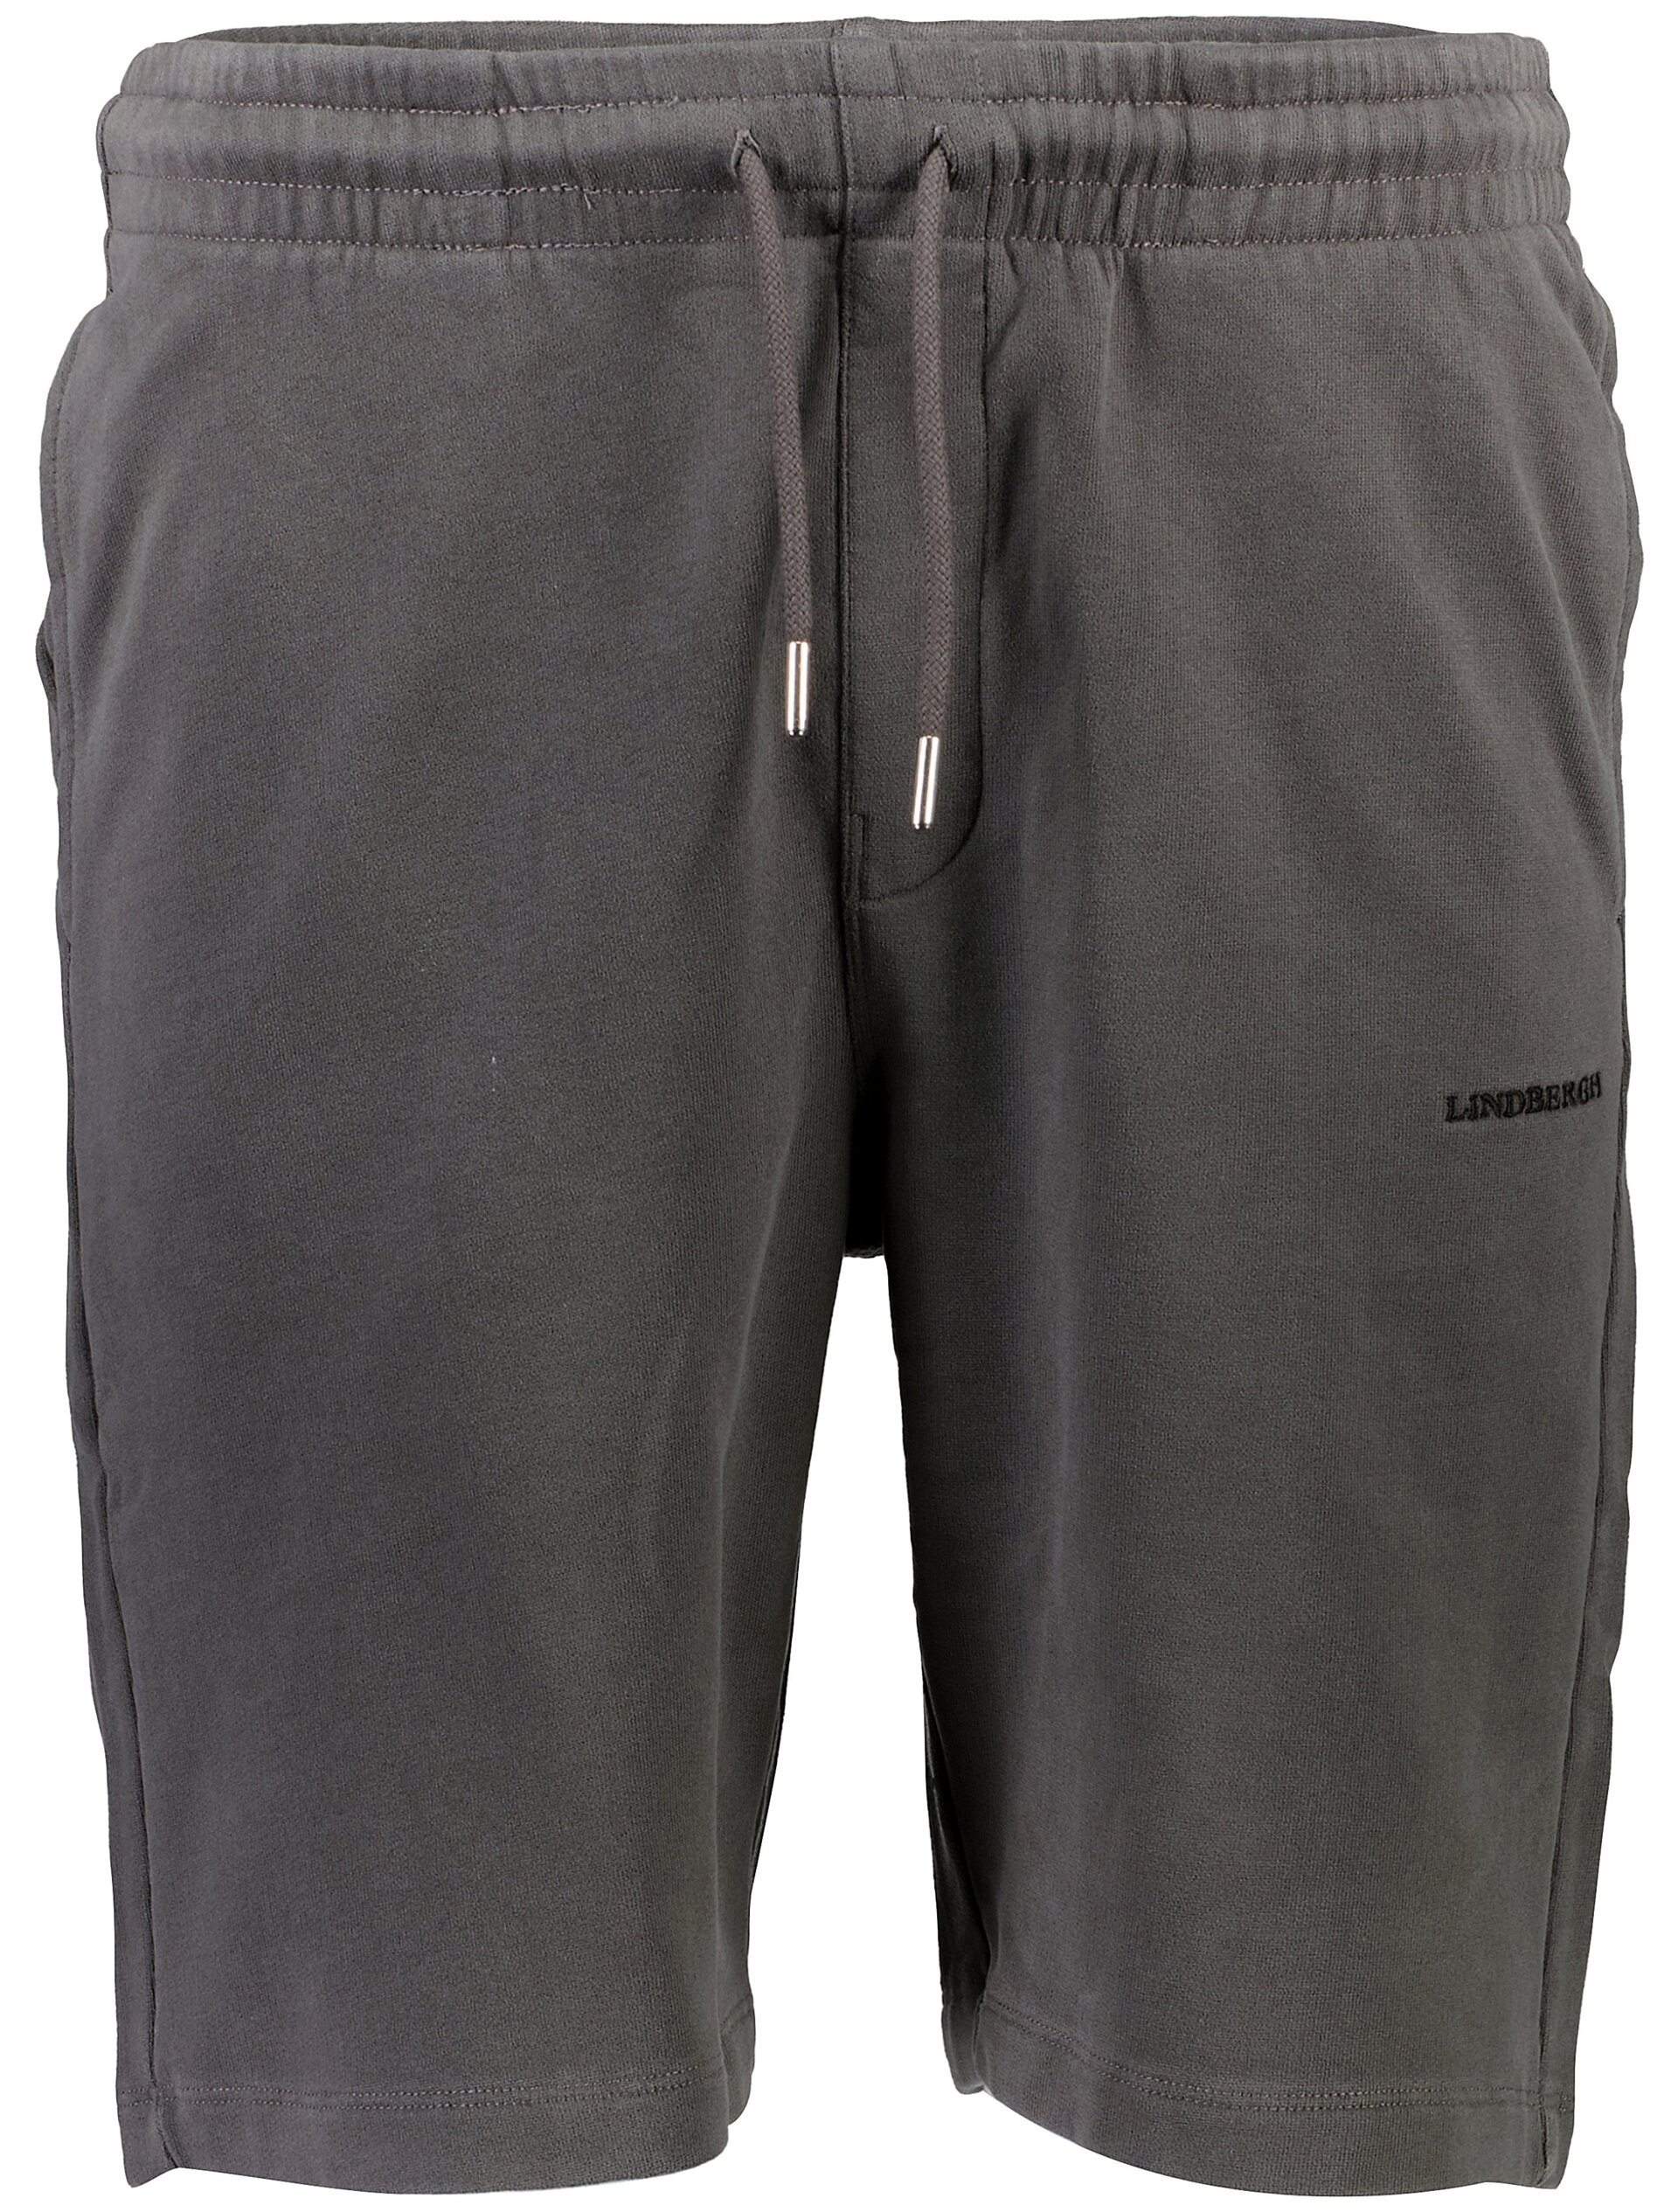 Lindbergh Casual shorts grey / charcoal